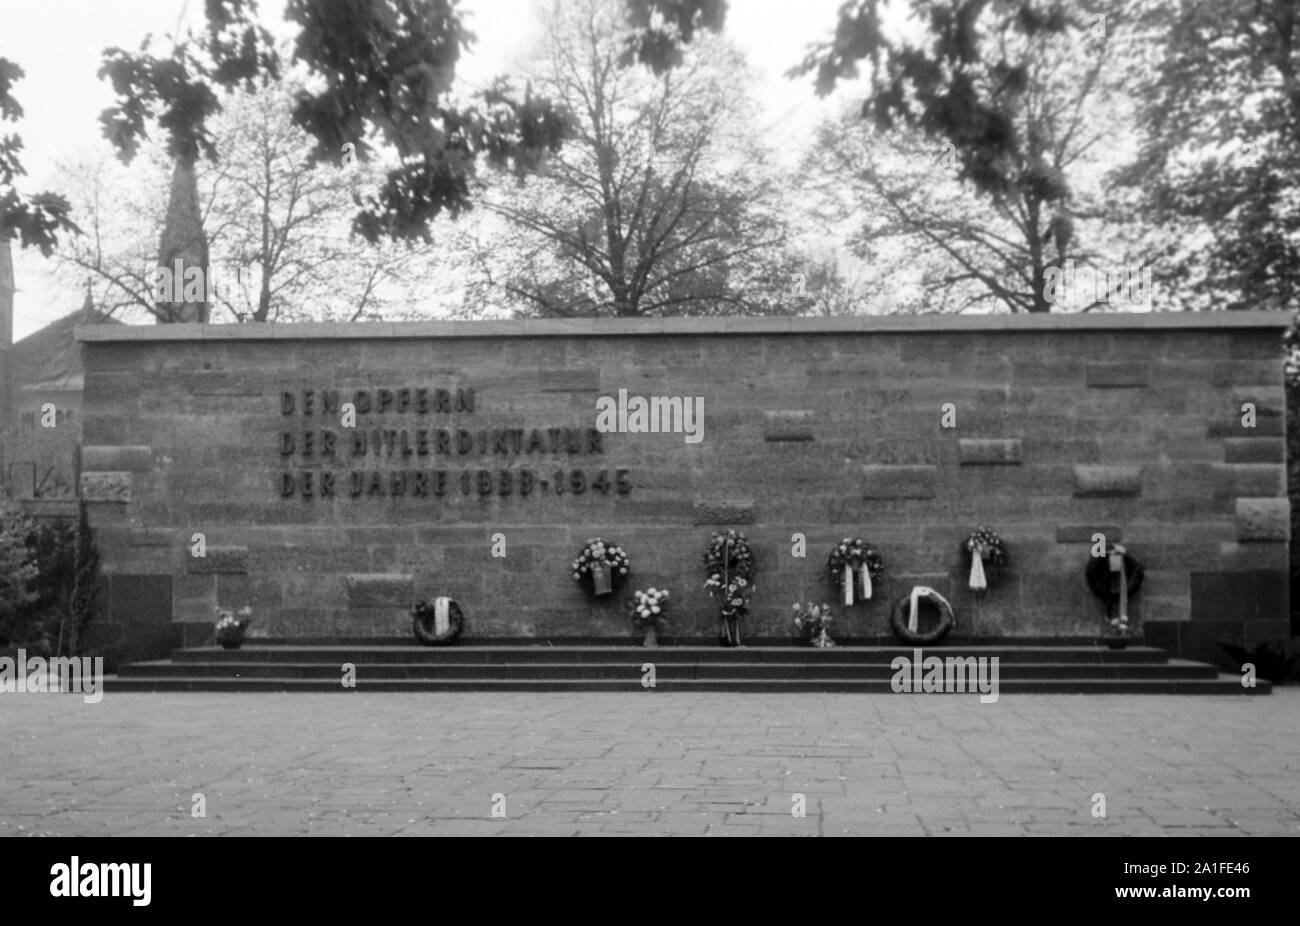 Gedenkstätte für die Opfer der Hitlerdiktatur der Jahre 1933 bis 1945 auf einem Friedhof a Berlino, Deutschland 1962. Parete memoriale per le vittime della dittatura hitleriana tra il 1933 un 1945 in un cimitero di Berlino, Germania 1962. Foto Stock